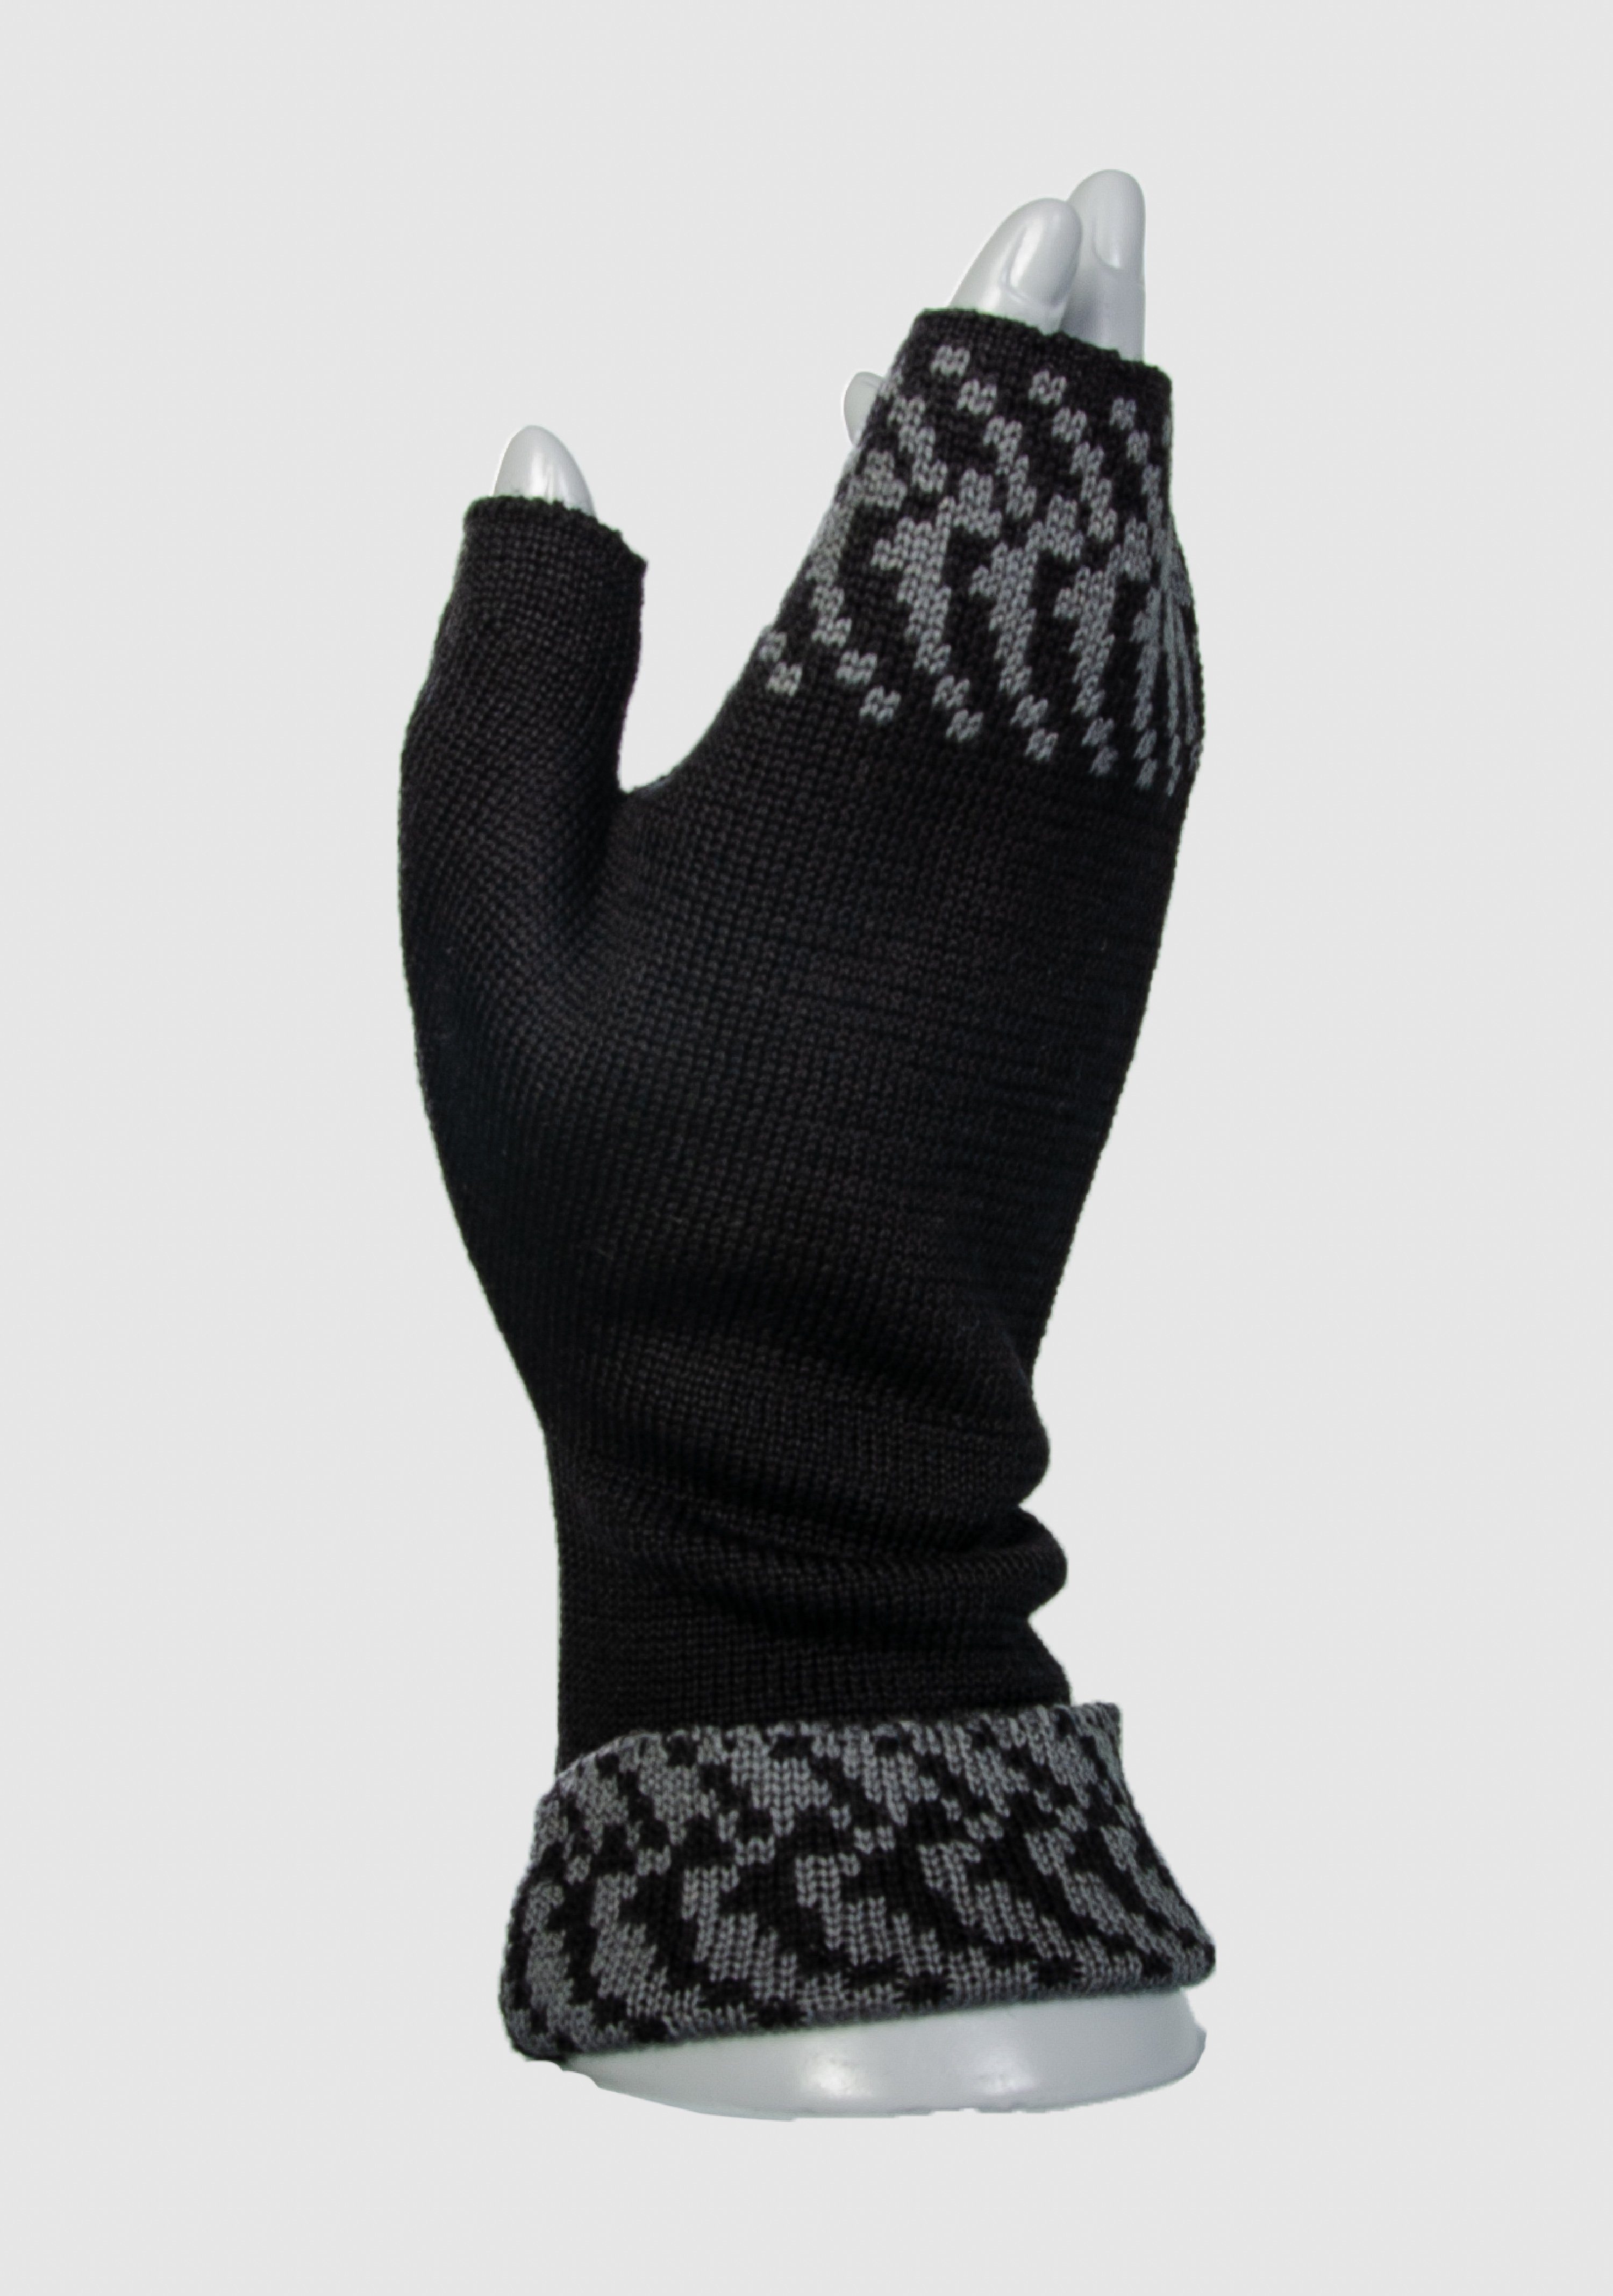 LANARTO slow fashion Pixel in aus Farben schwarz_graphit Handwärmer Merino Strickhandschuhe 100% extrasoft vielen Merino